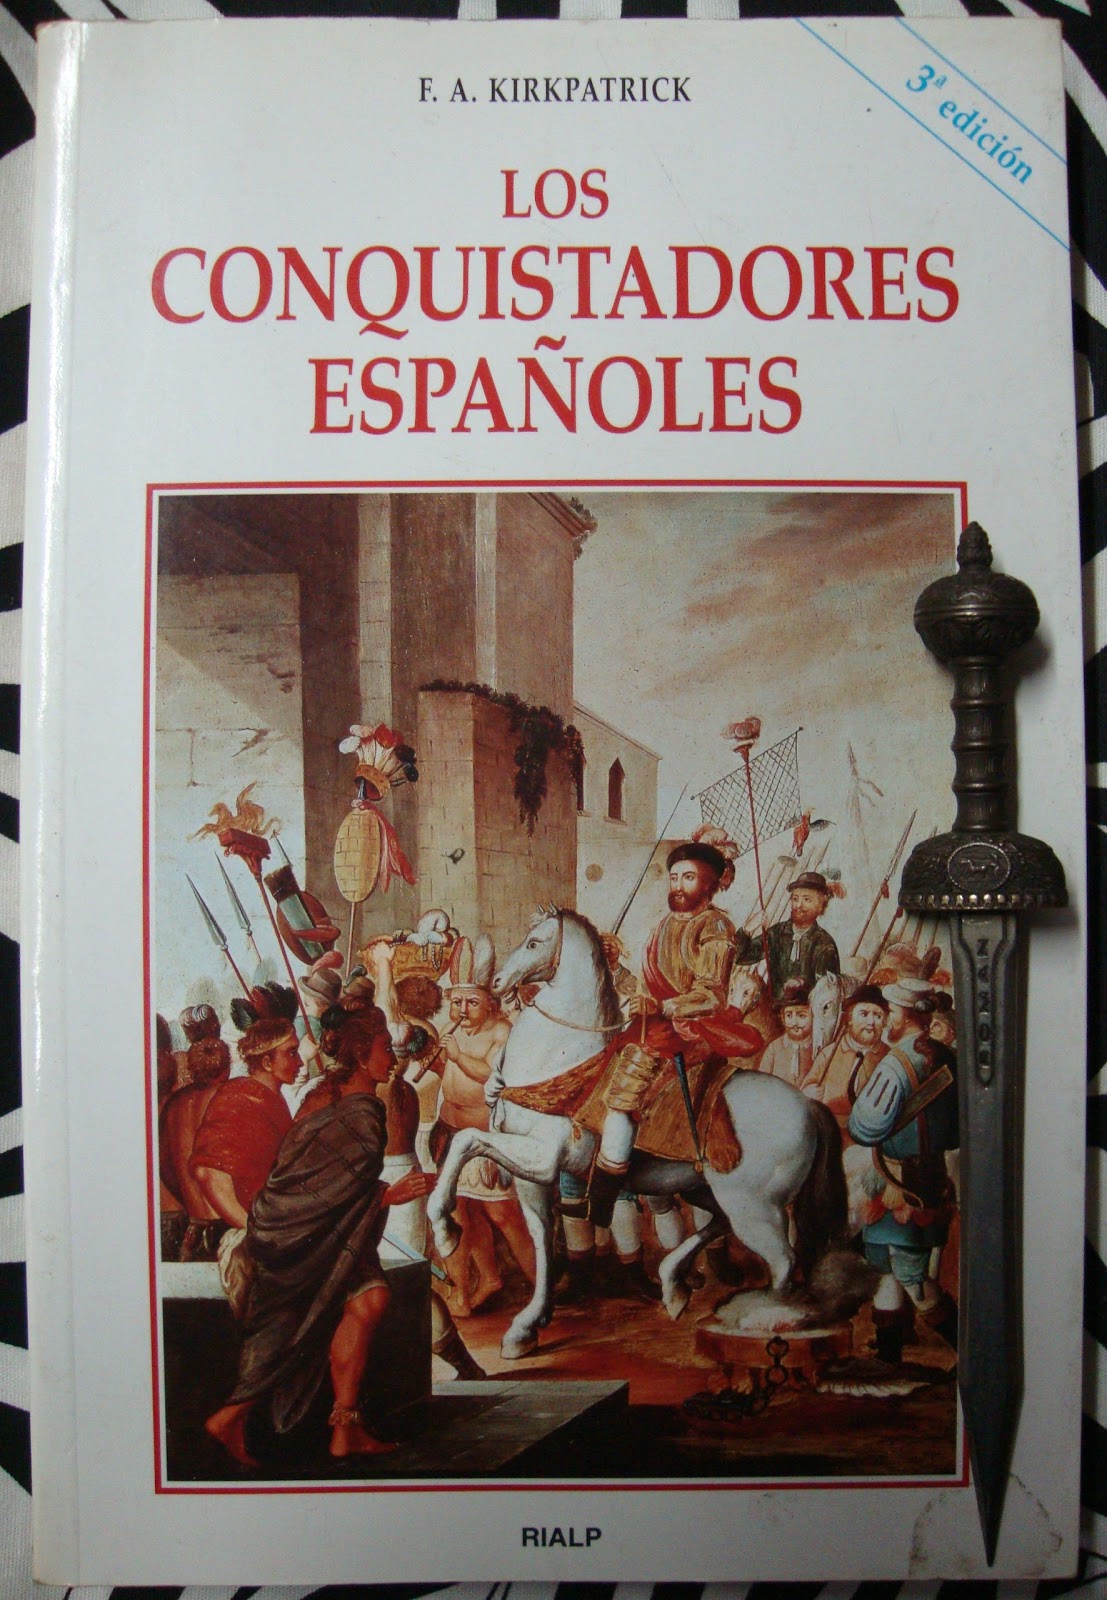 Libros de Olethros: LOS CONQUISTADORES ESPAÑOLES. F. A. Kirkpatrick